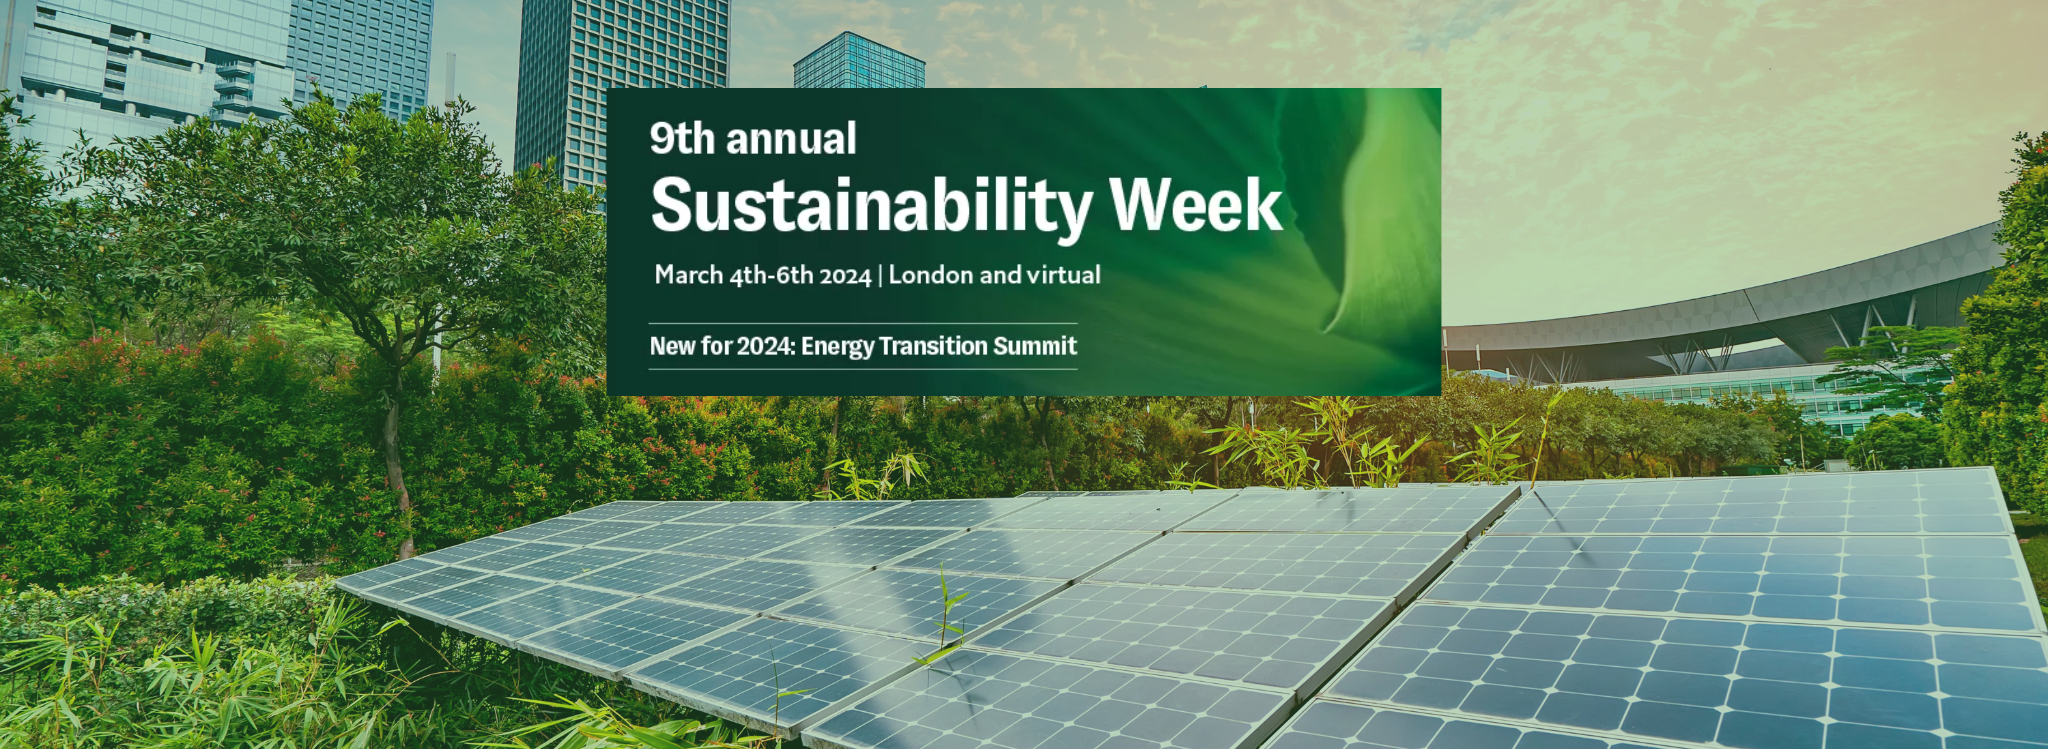 London Sustainability Week (1)